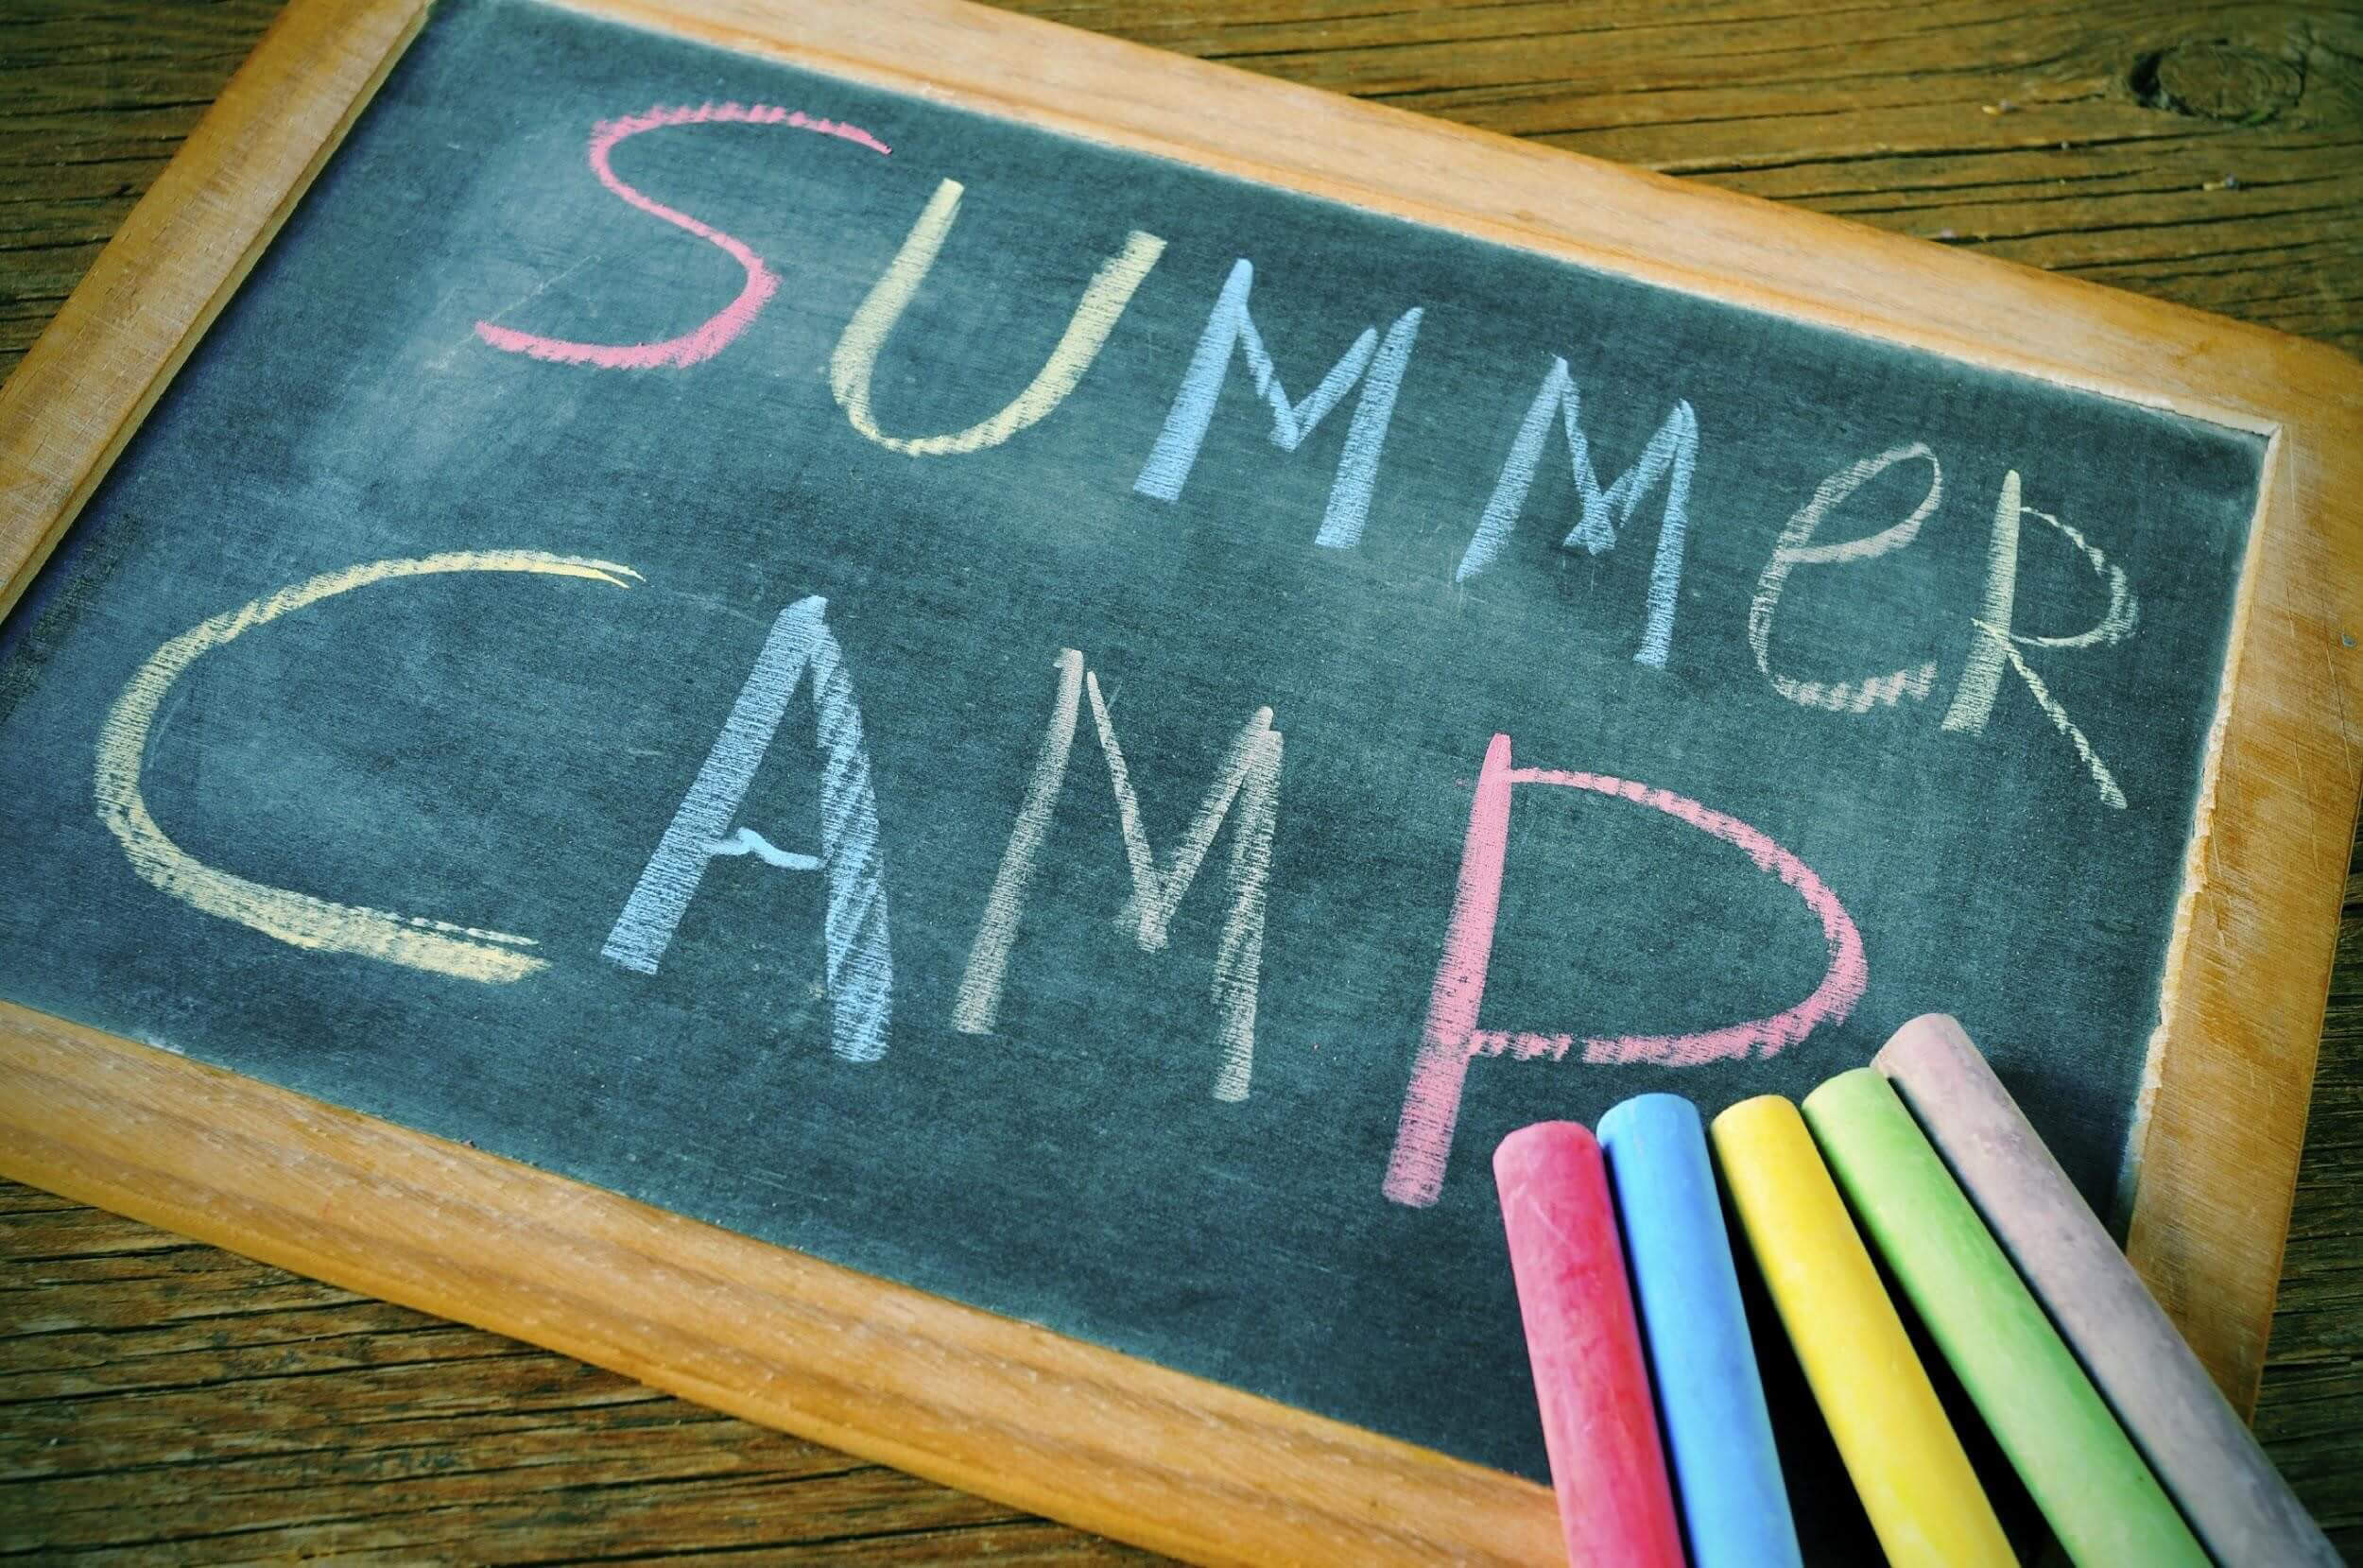 Summer Camp Written in Chalk on Chalkboard